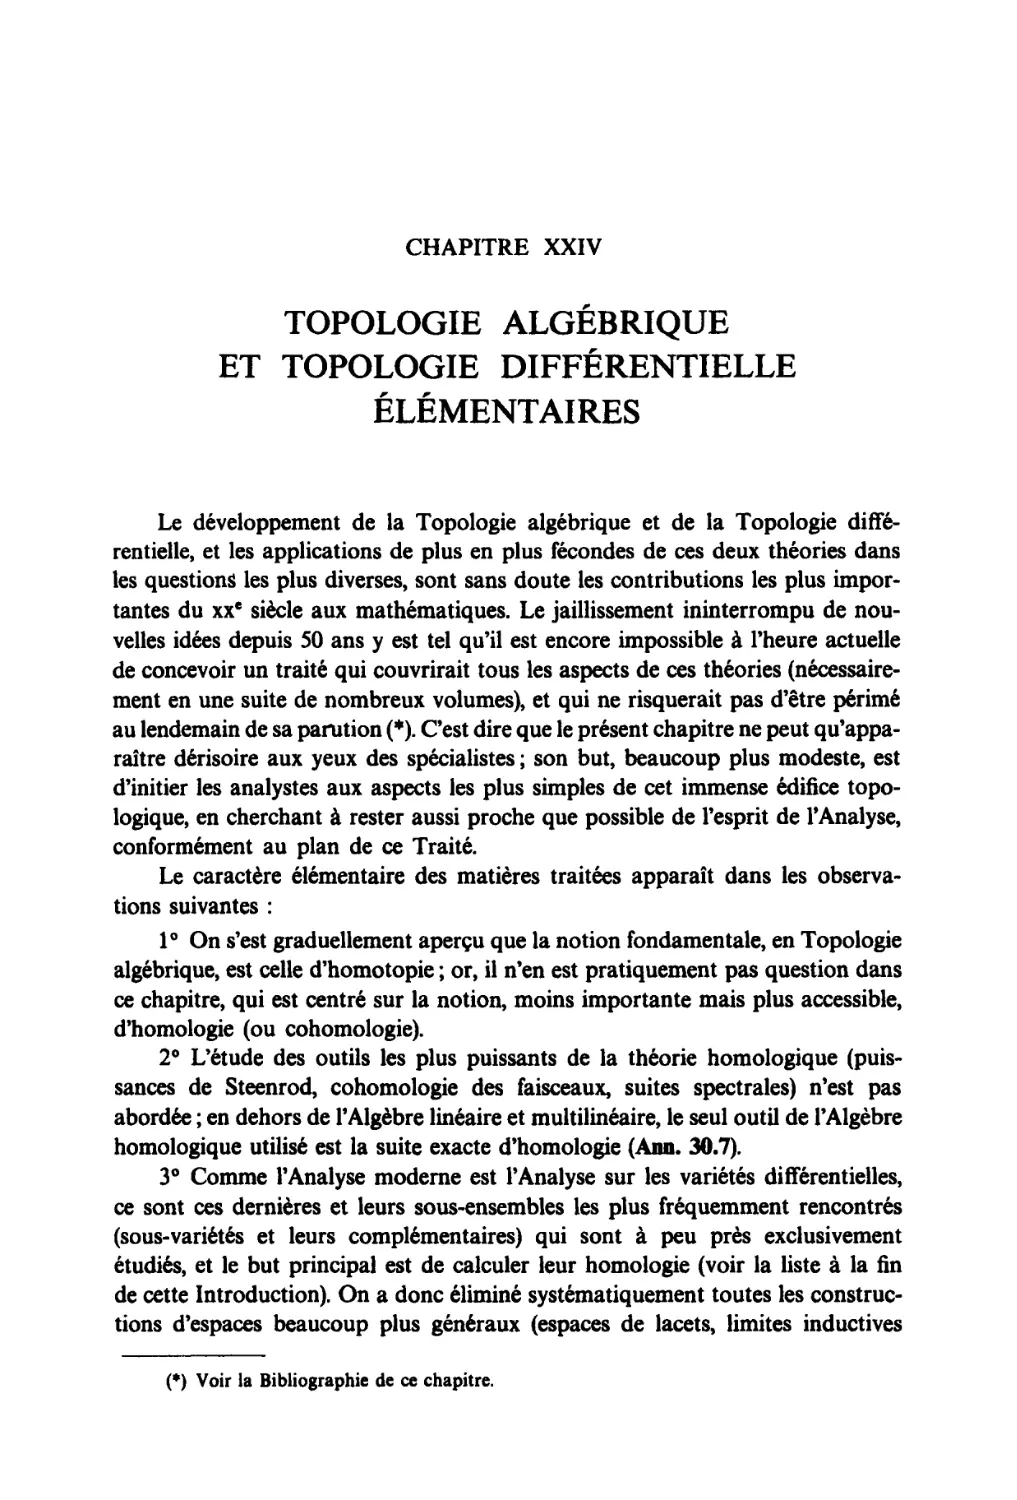 Chapitre XXIV Topologie algébrique et topologie différentielle élémentaires